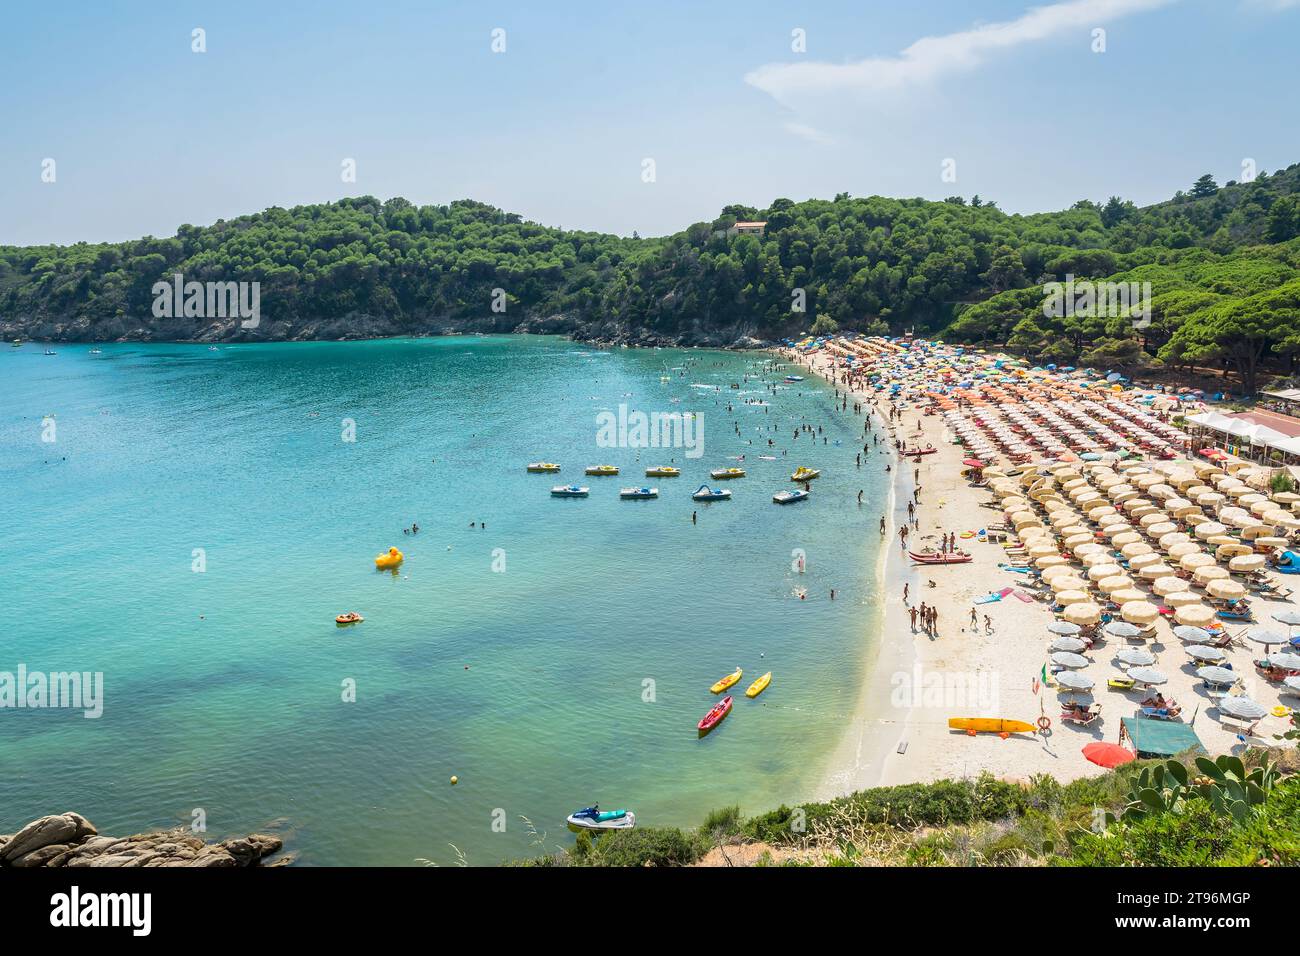 Vue de jour de la célèbre plage de Fetovaia sur l'île d'Elbe, Toscane, Italie Banque D'Images